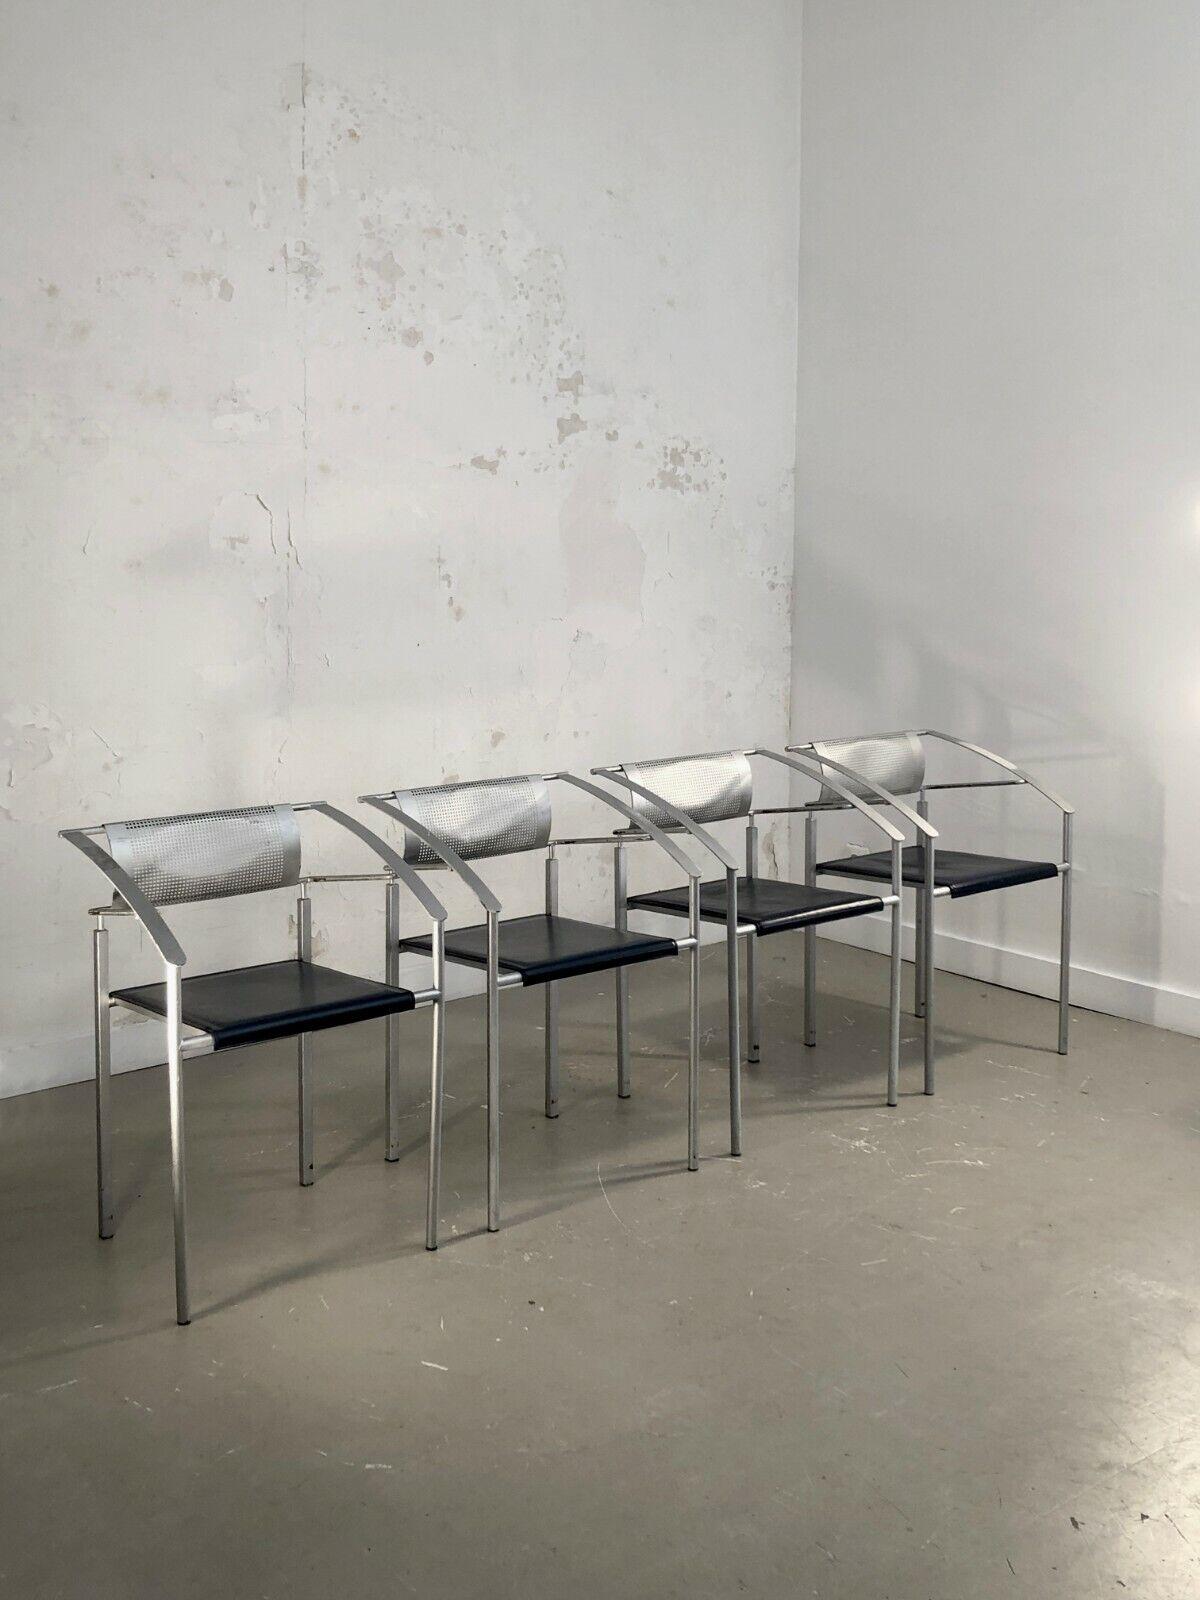 Un ensemble de 4 chaises empilables, post-moderniste, constructiviste, Memphis, structures géométriques complexes en métal à section carrée gris métallisé, sièges en cuir bleu foncé, dossier et métal perforé, édition Fly-Line, Italie